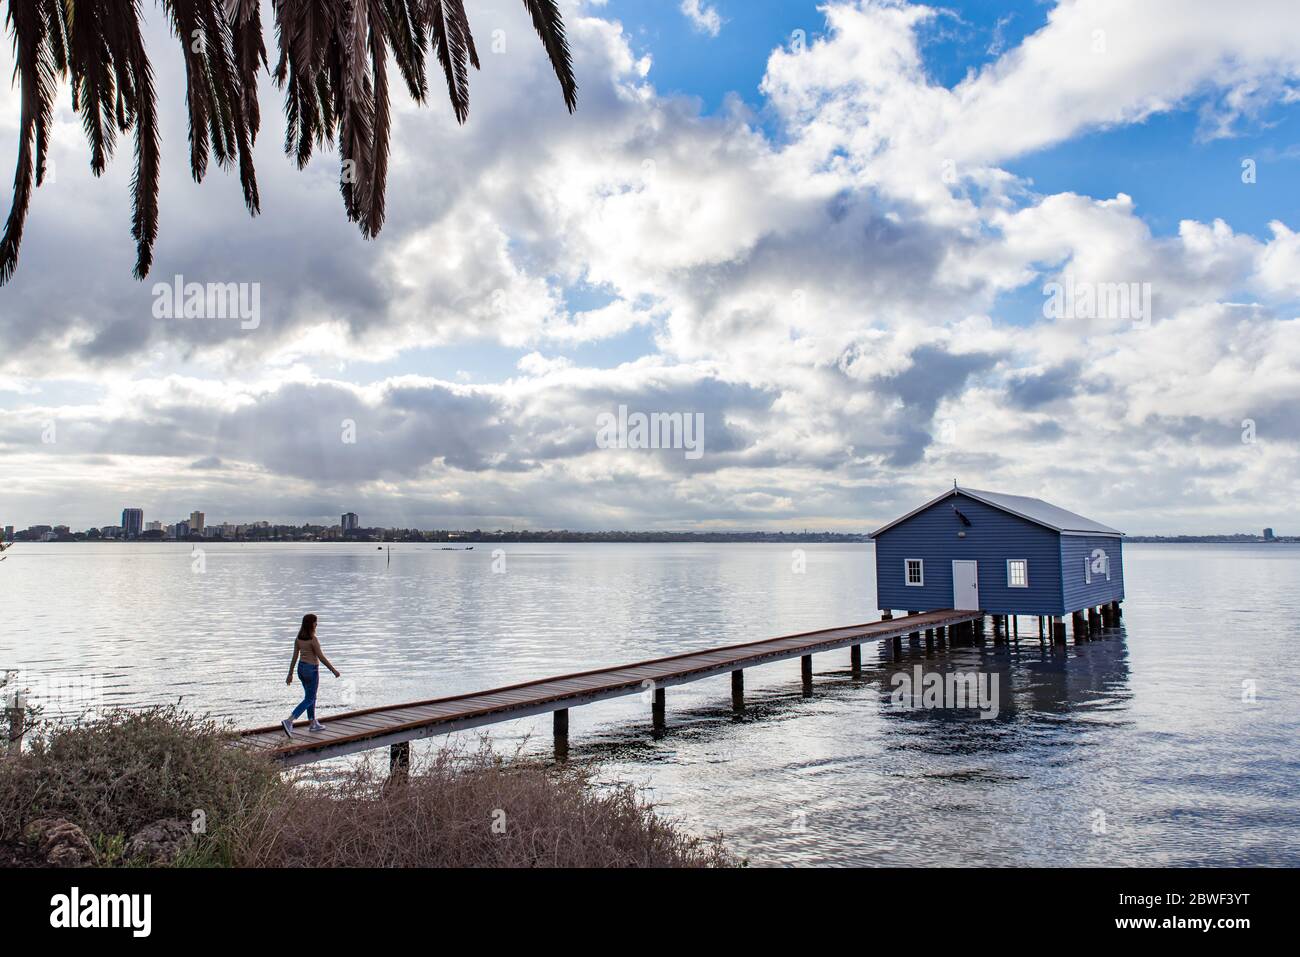 Perth, novembre 2019: Une fille touriste marchant sur la jetée, regardant la célèbre petite maison de bateau bleu - le Crawley Edge Boatshed situé sur la Swan River Banque D'Images